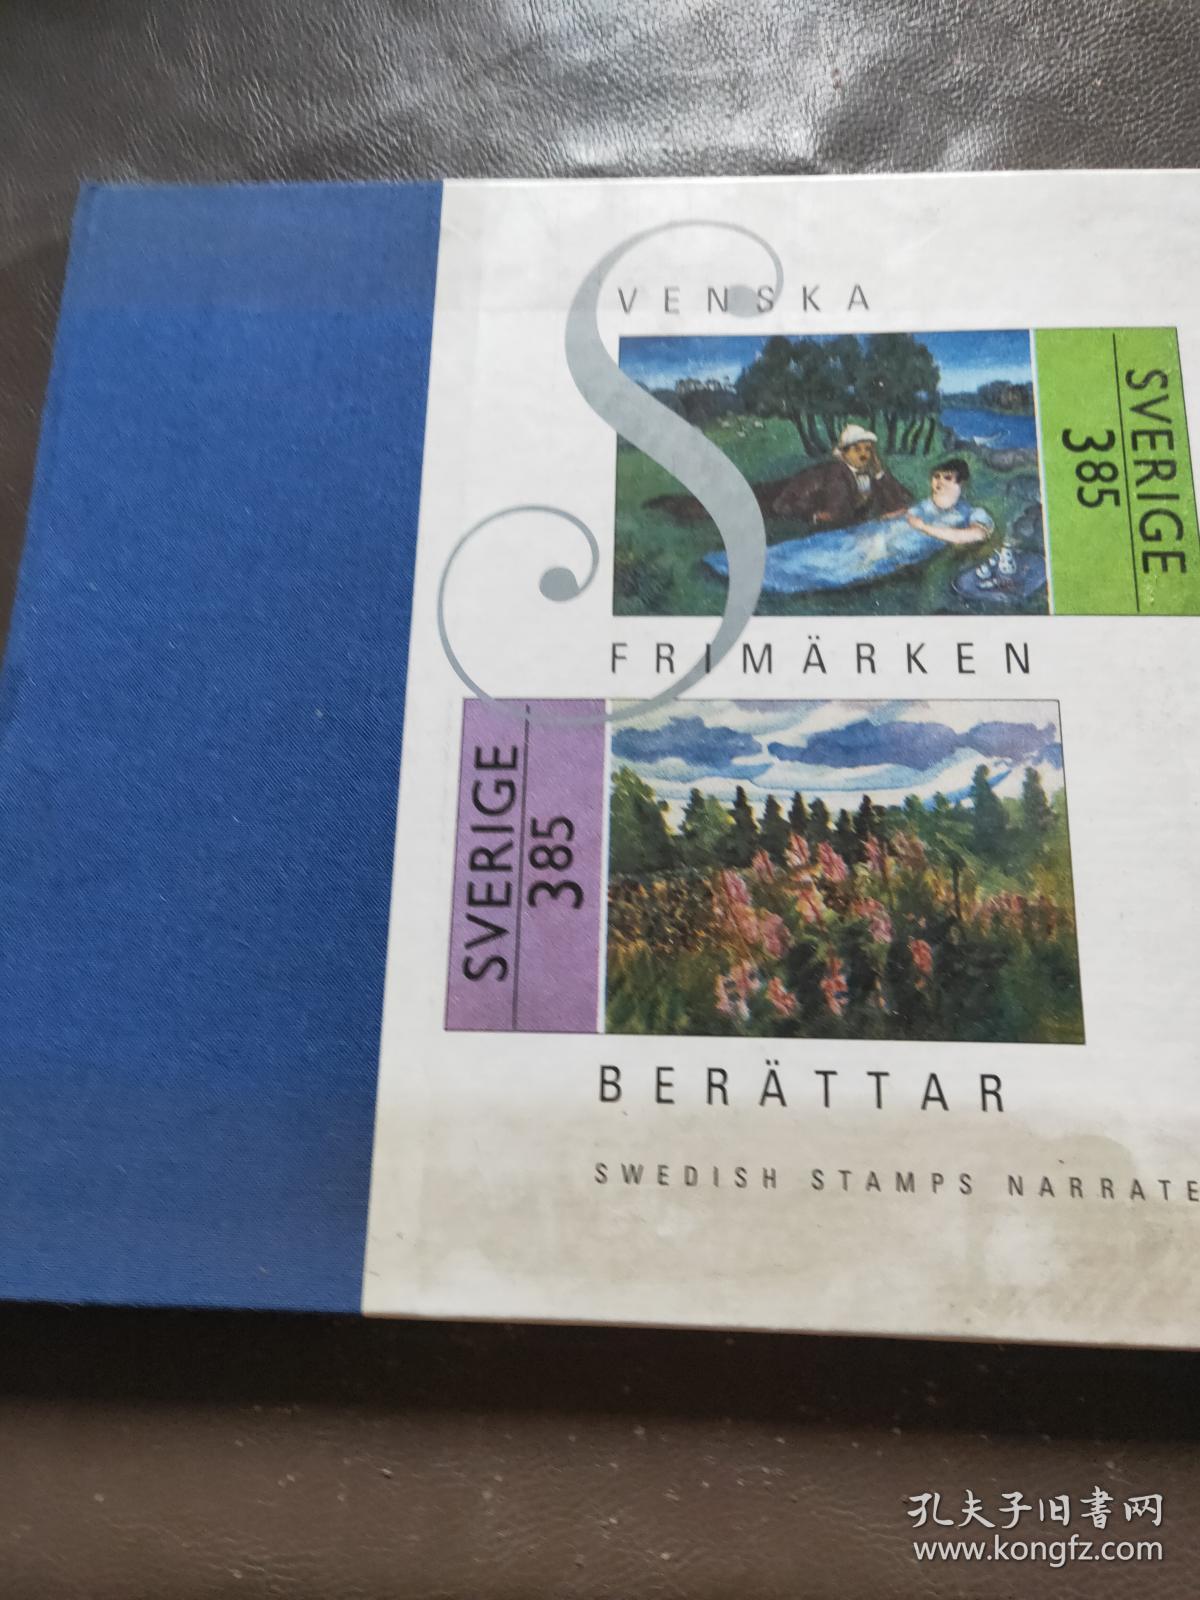 svenska frimarken berattar内有邮票